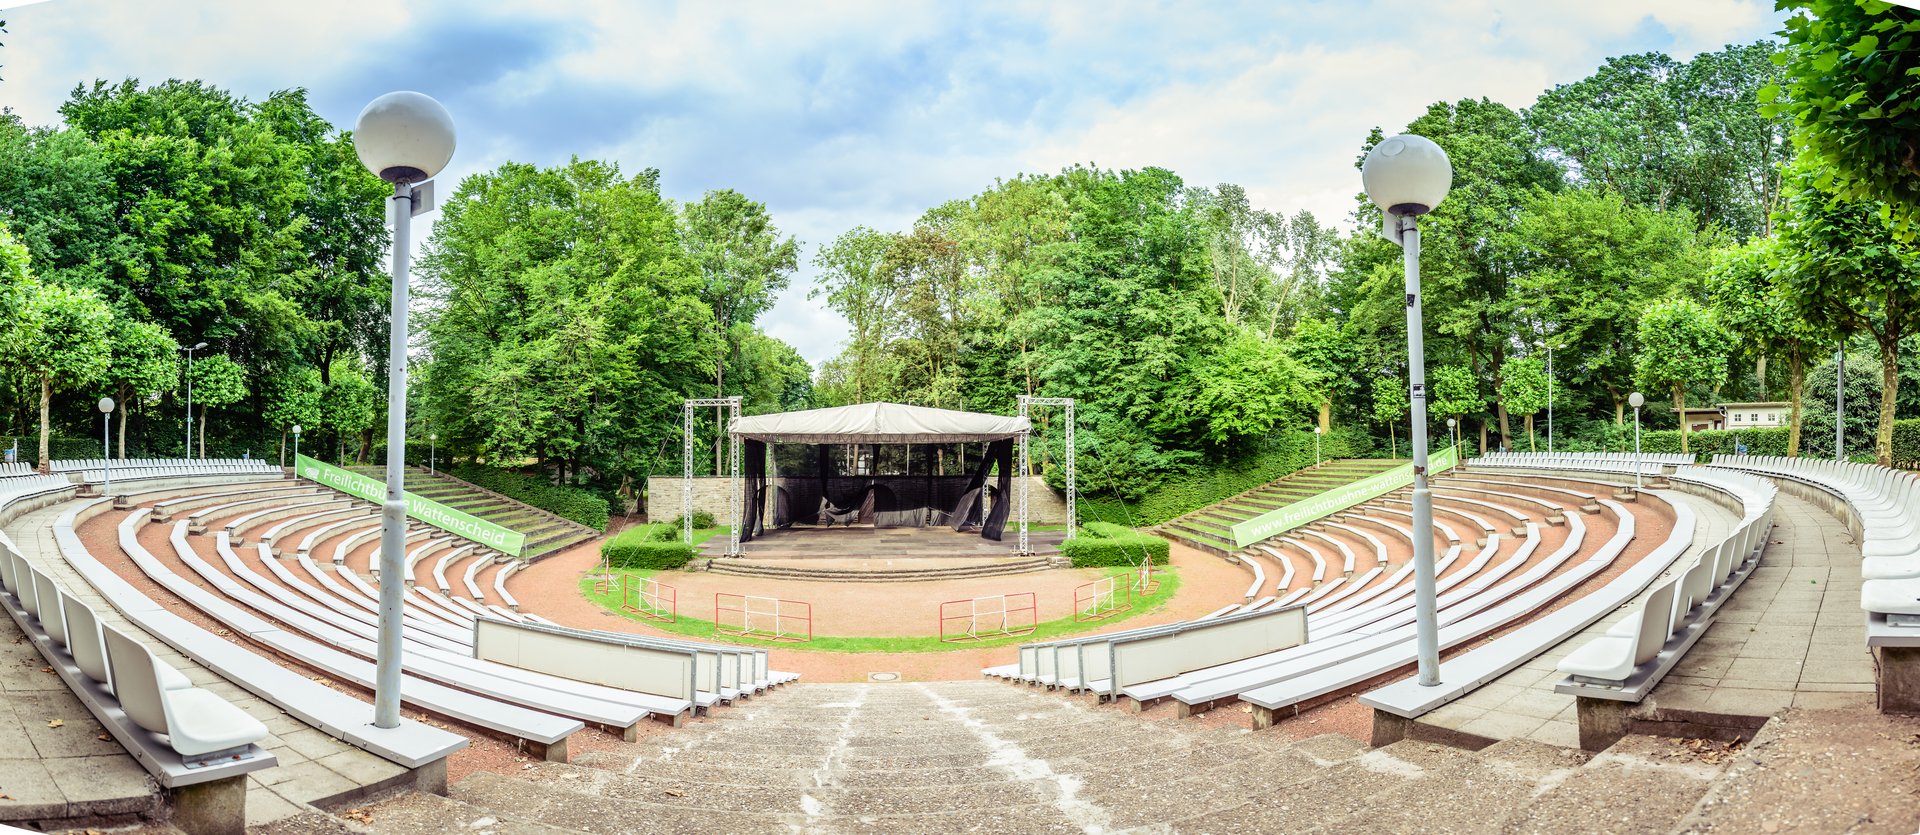 Panorama-Aufnahme der leeren Freilichtbühne Wattenscheid. Im Vordergrund zwei Laternen, die Sitzreihen und die Freitreppe zur Bühne. Im Hintergrund grüne Bäume.